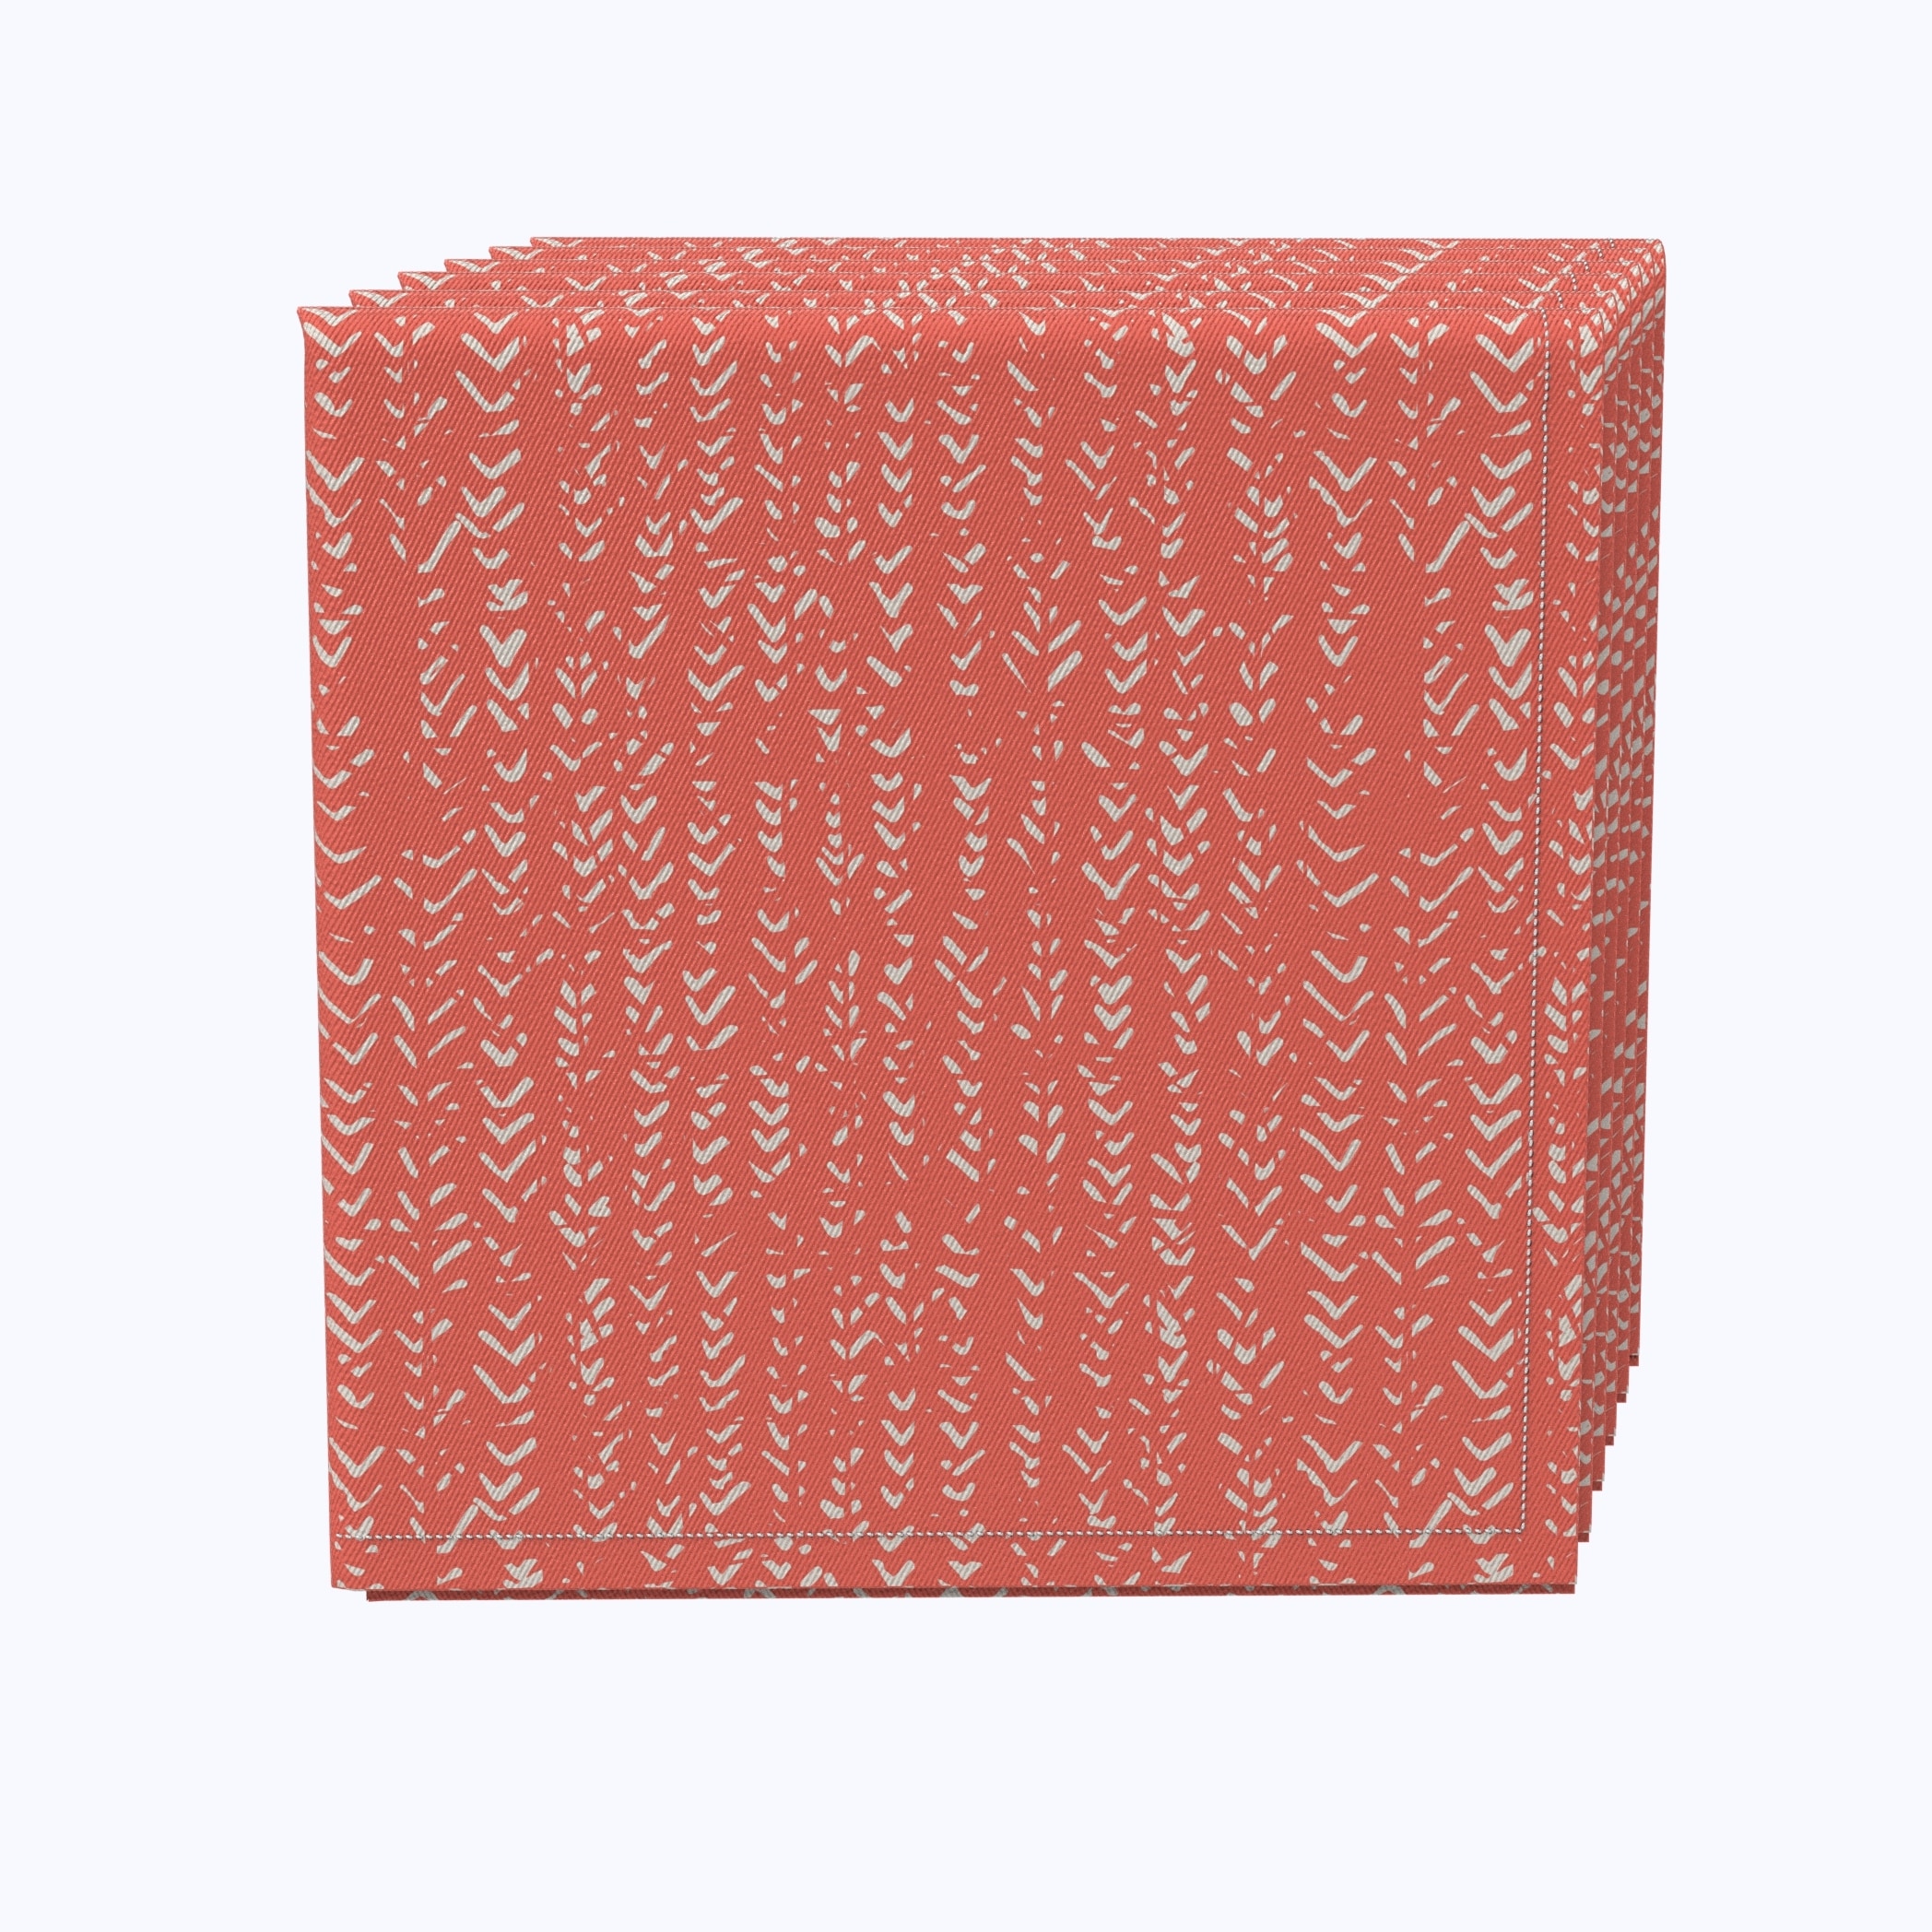 Fabric Textile Products, Inc. Napkin Set of 4, 100% Cotton, 20x20", Coral Batik Design - 20 x 20